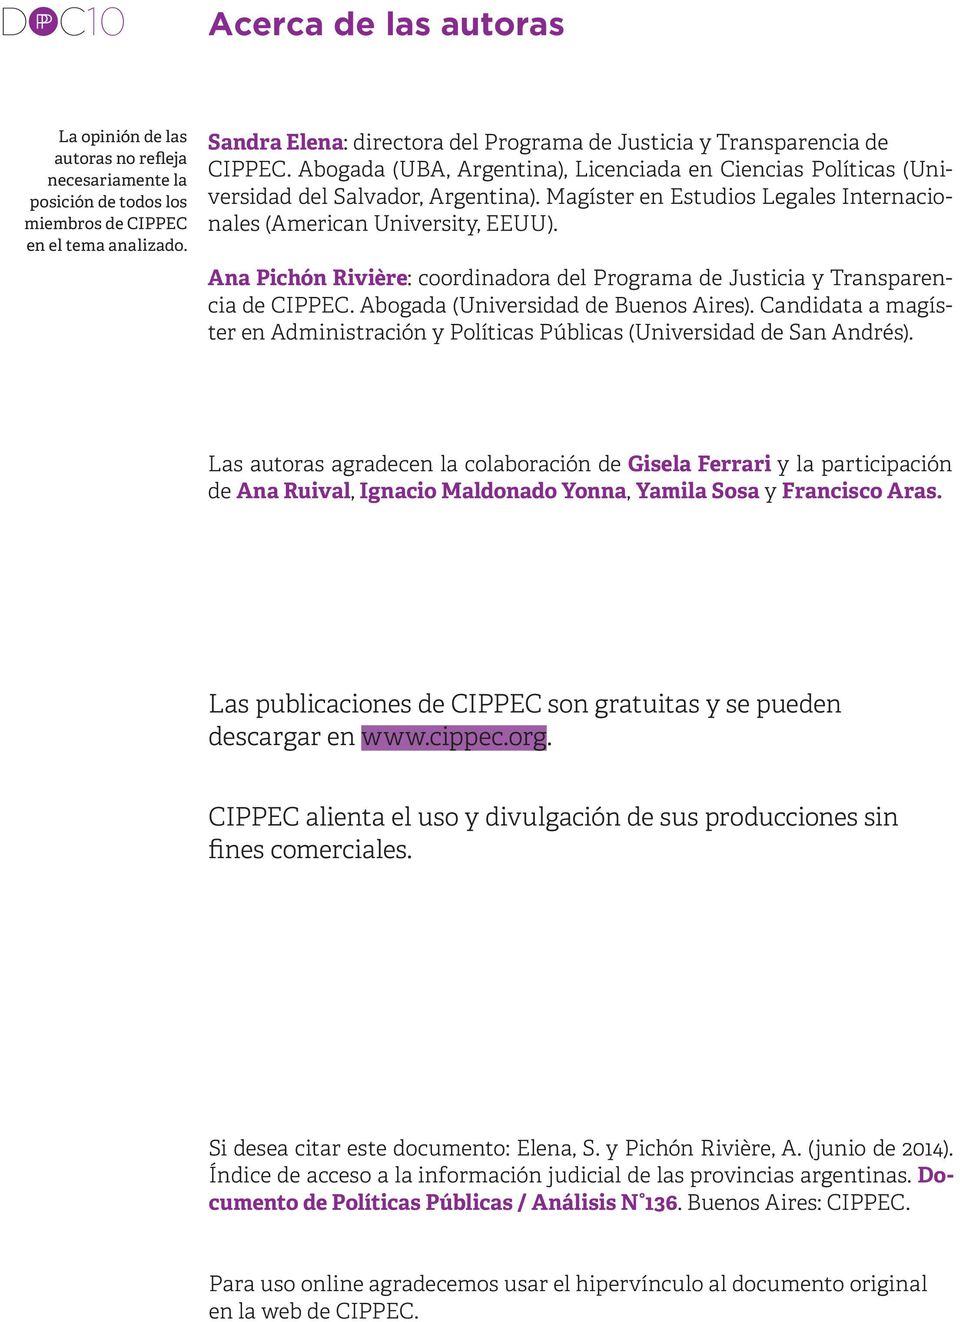 Magíster en Estudios Legales Internacionales (American University, EEUU). Ana Pichón Rivière: coordinadora del Programa de Justicia y Transparencia de CIPPEC. Abogada (Universidad de Buenos Aires).